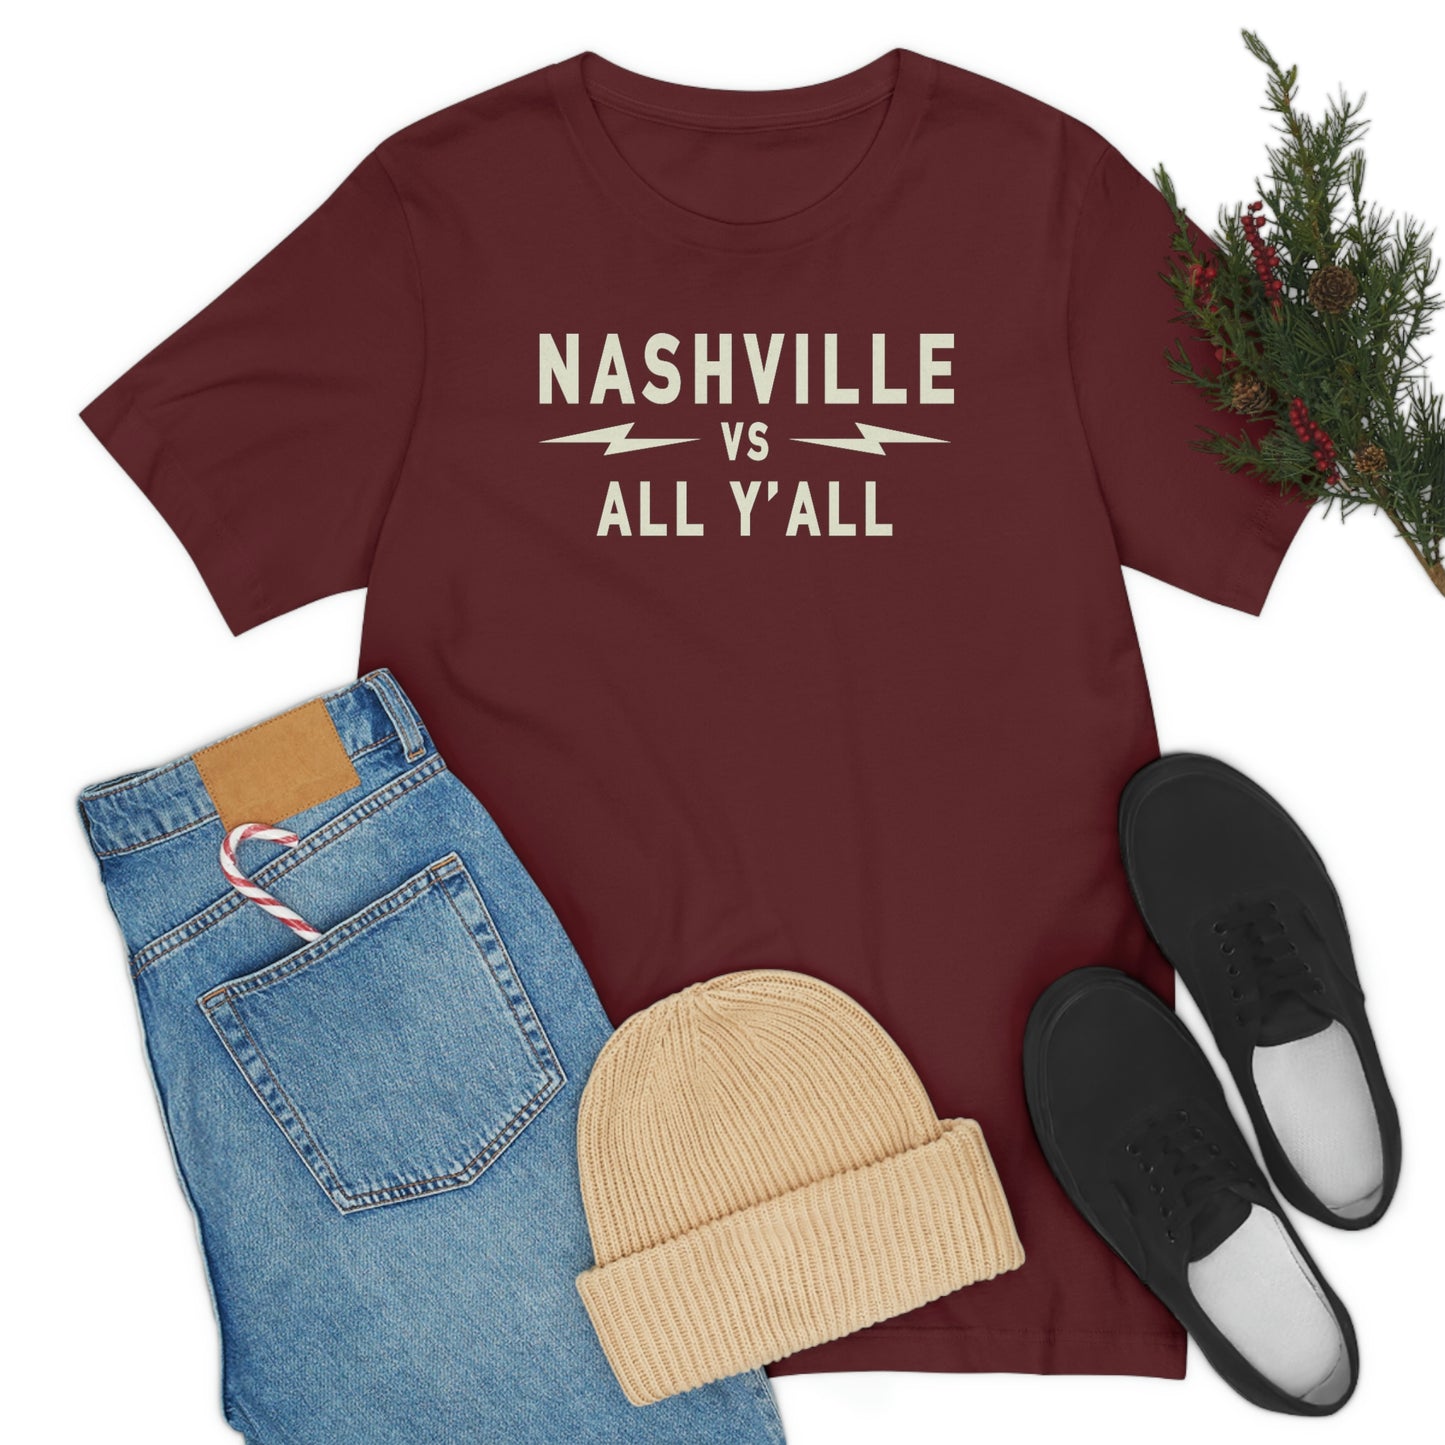 Nashville Vs White Text graphic